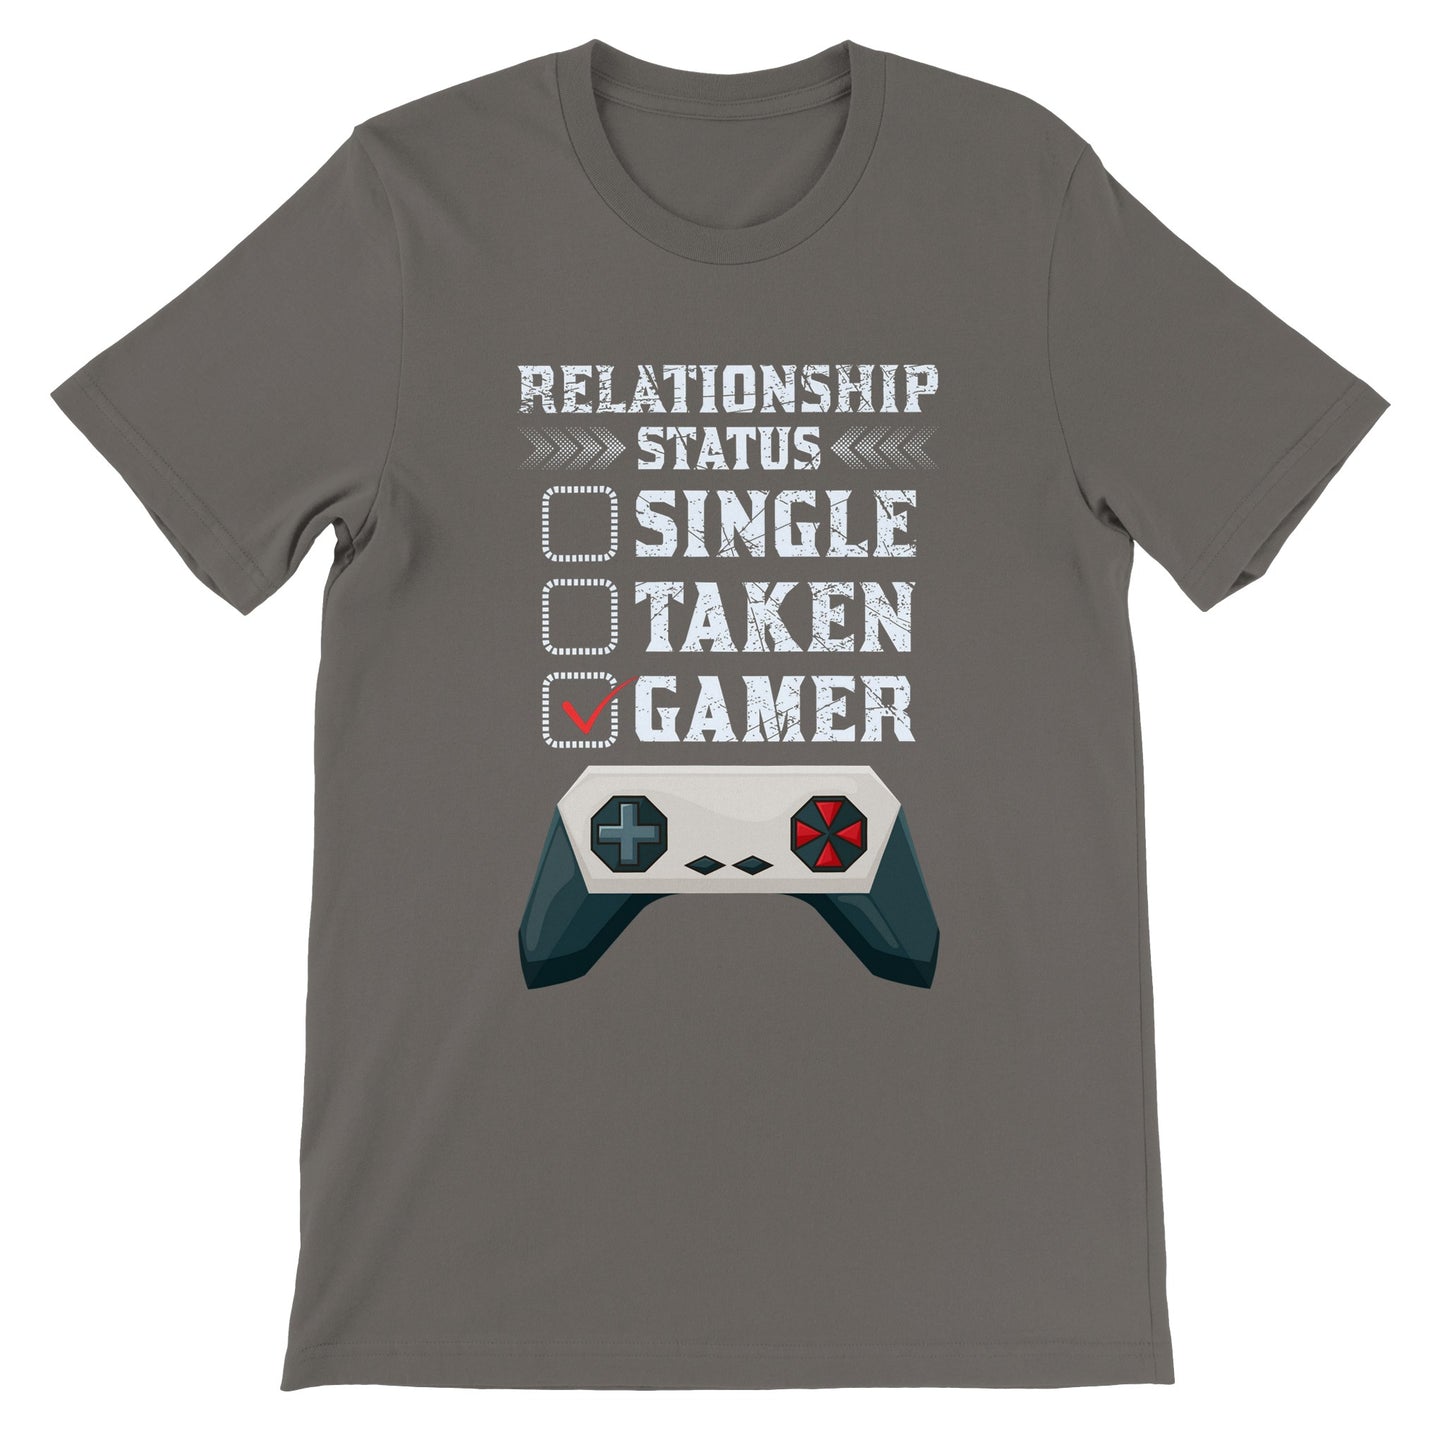 Gaming T-shirts - Relationship Status Single Taken Gamer - Premium Unisex T-shirt 